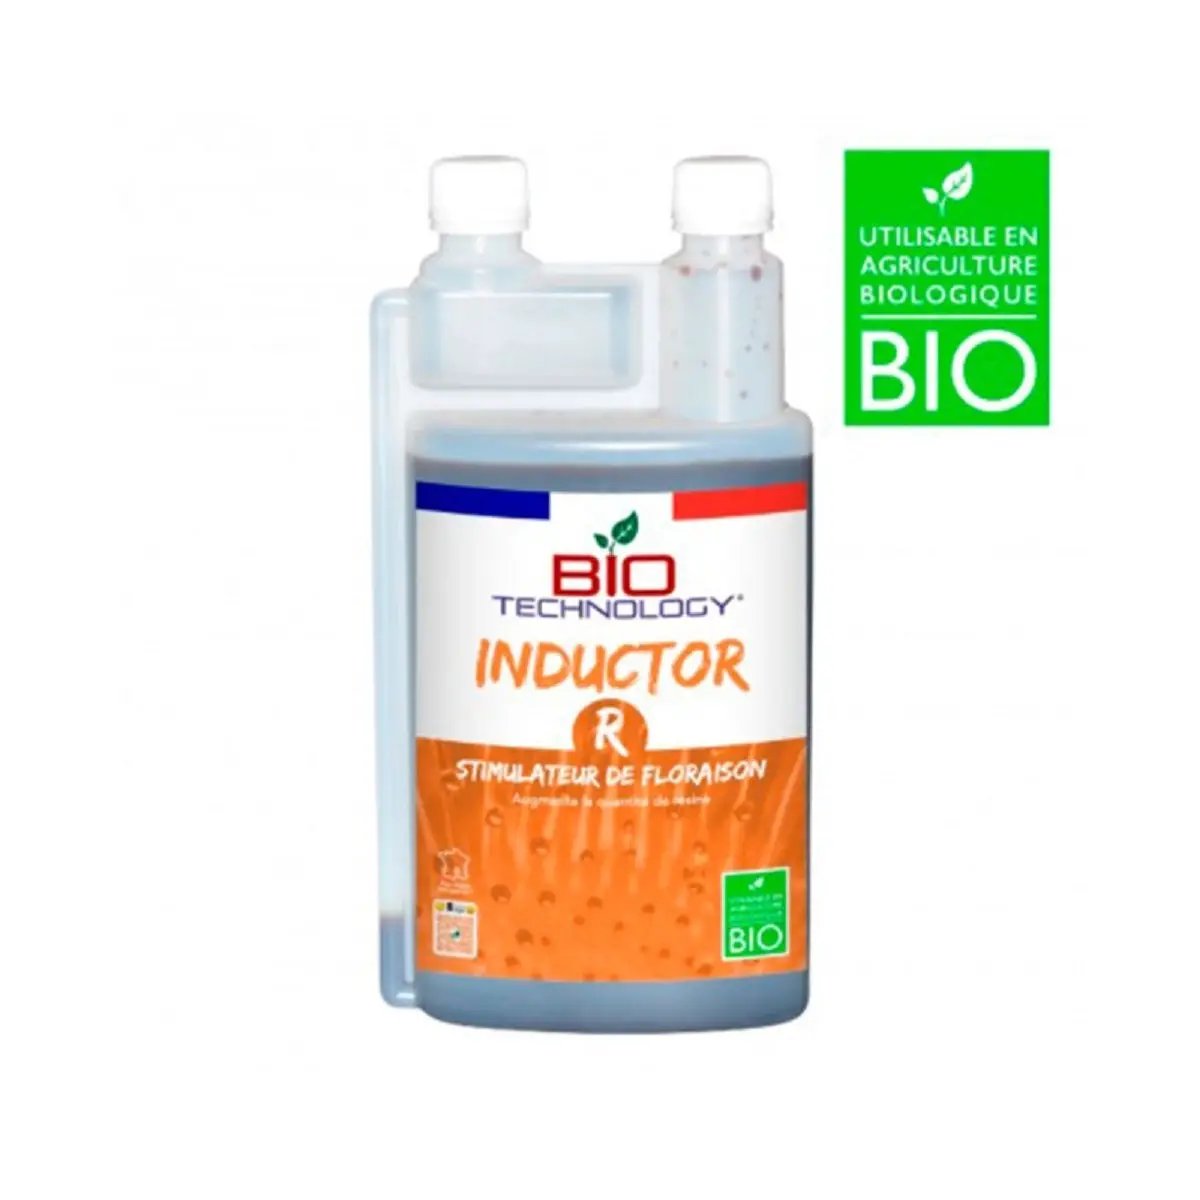 Stimulateur de résine Bio Technology Inductor R 1 litre